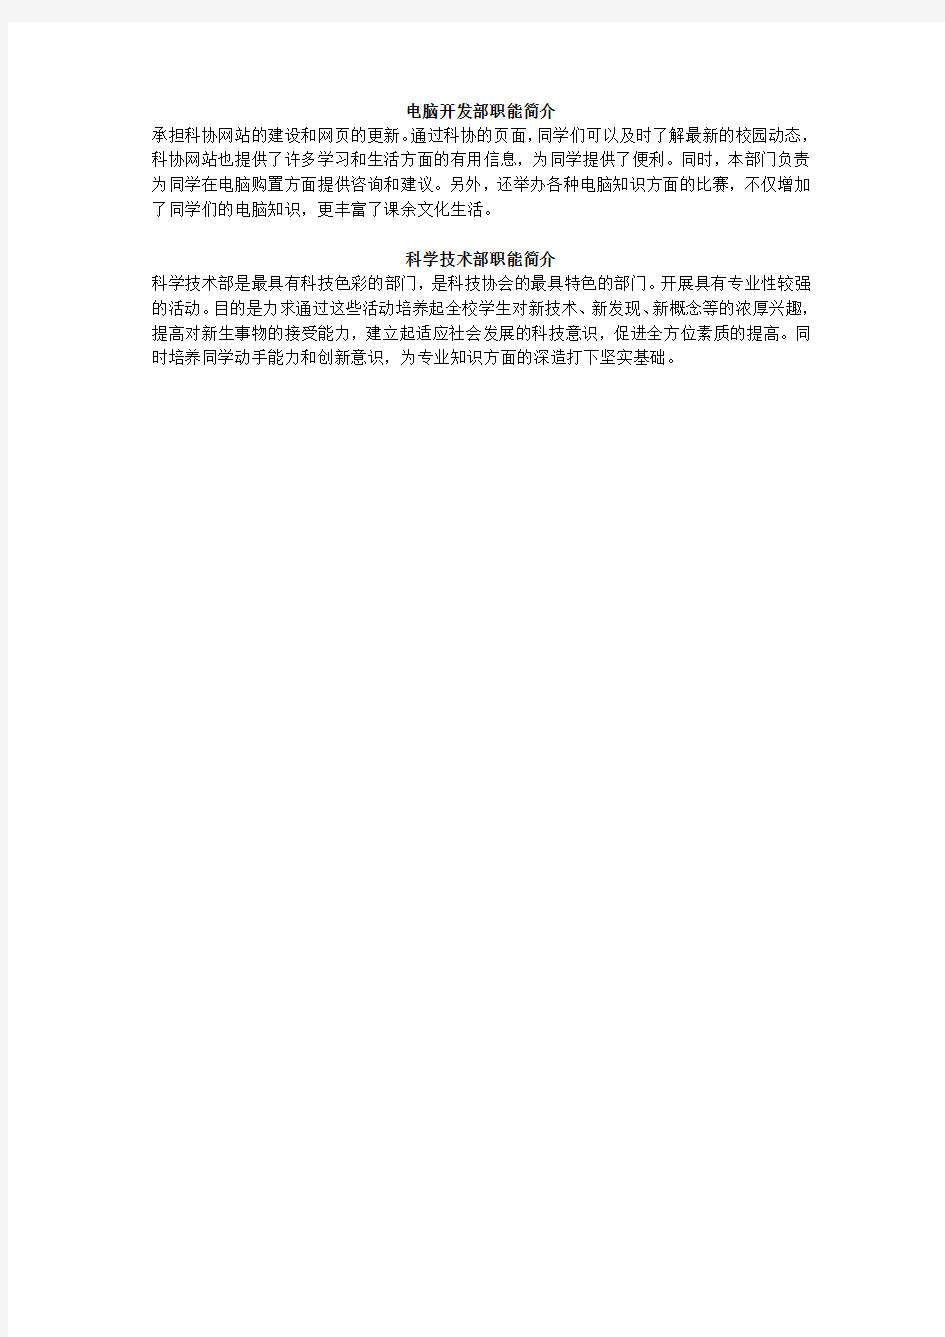 南京理工大学紫金学院科协组织结构和部门职能